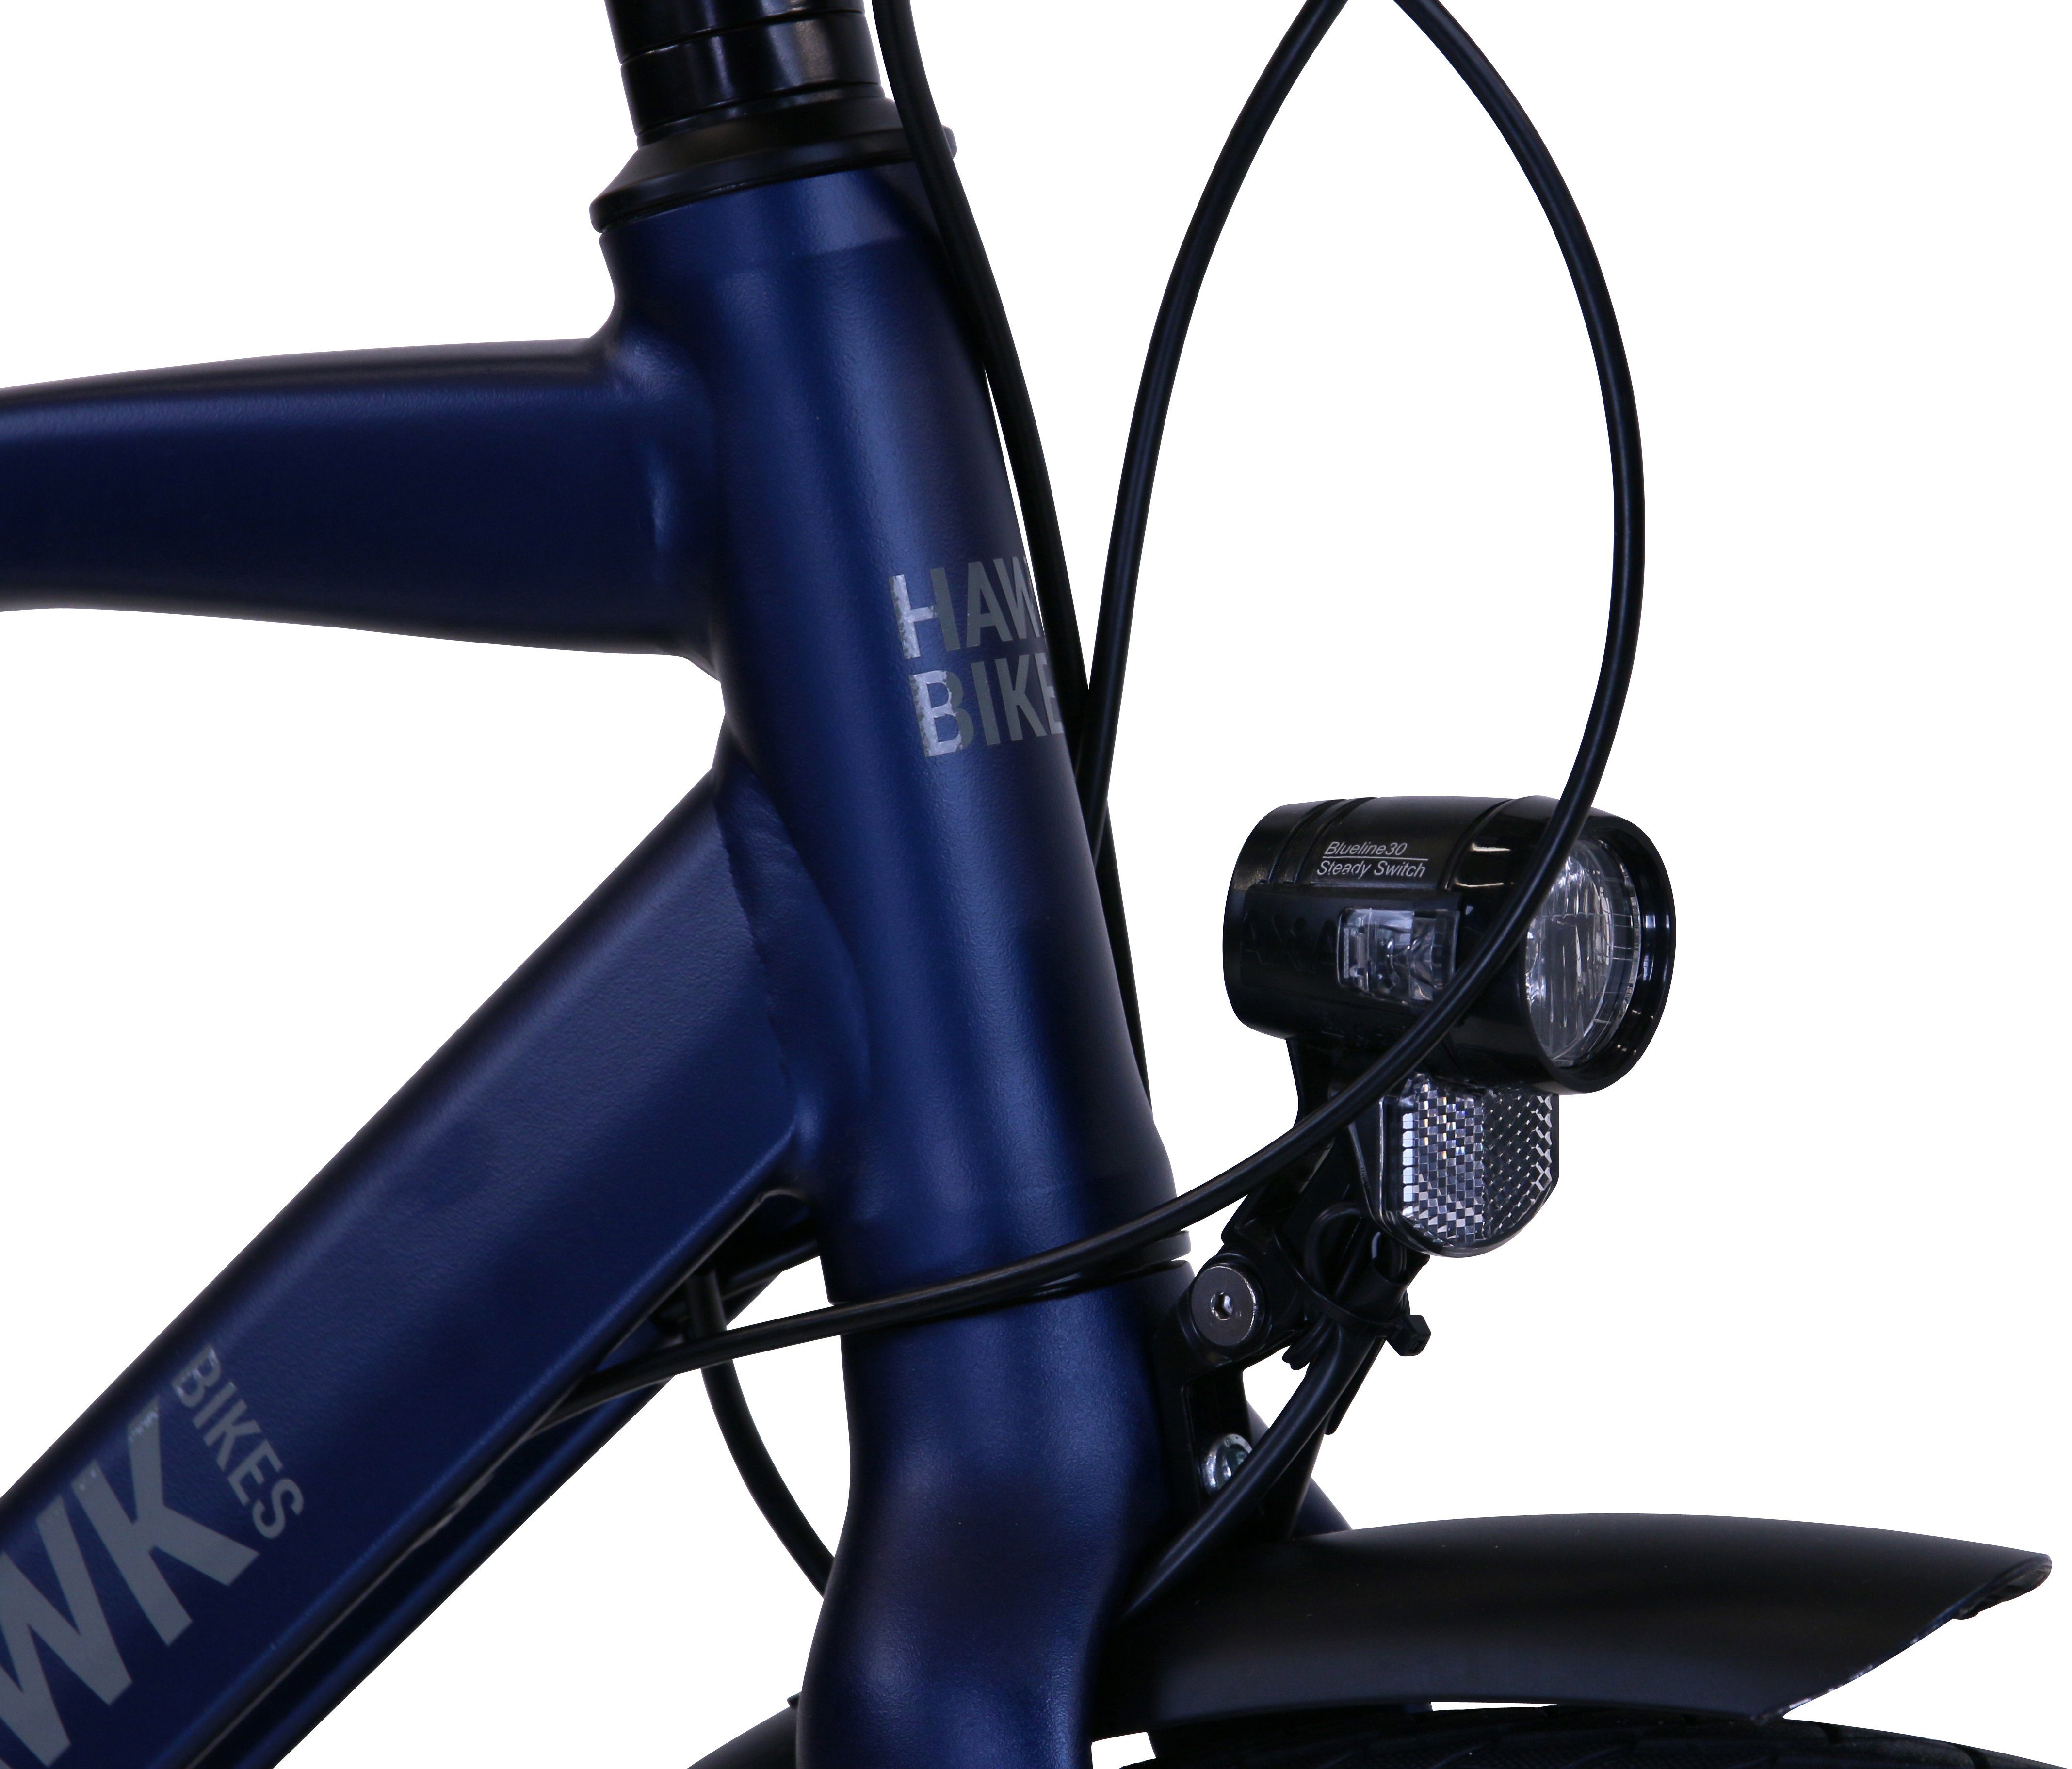 Gent HAWK HAWK Ocean Nexus 8 Gang Shimano Super Schaltwerk Bikes Deluxe Trekkingrad Trekking Blue,